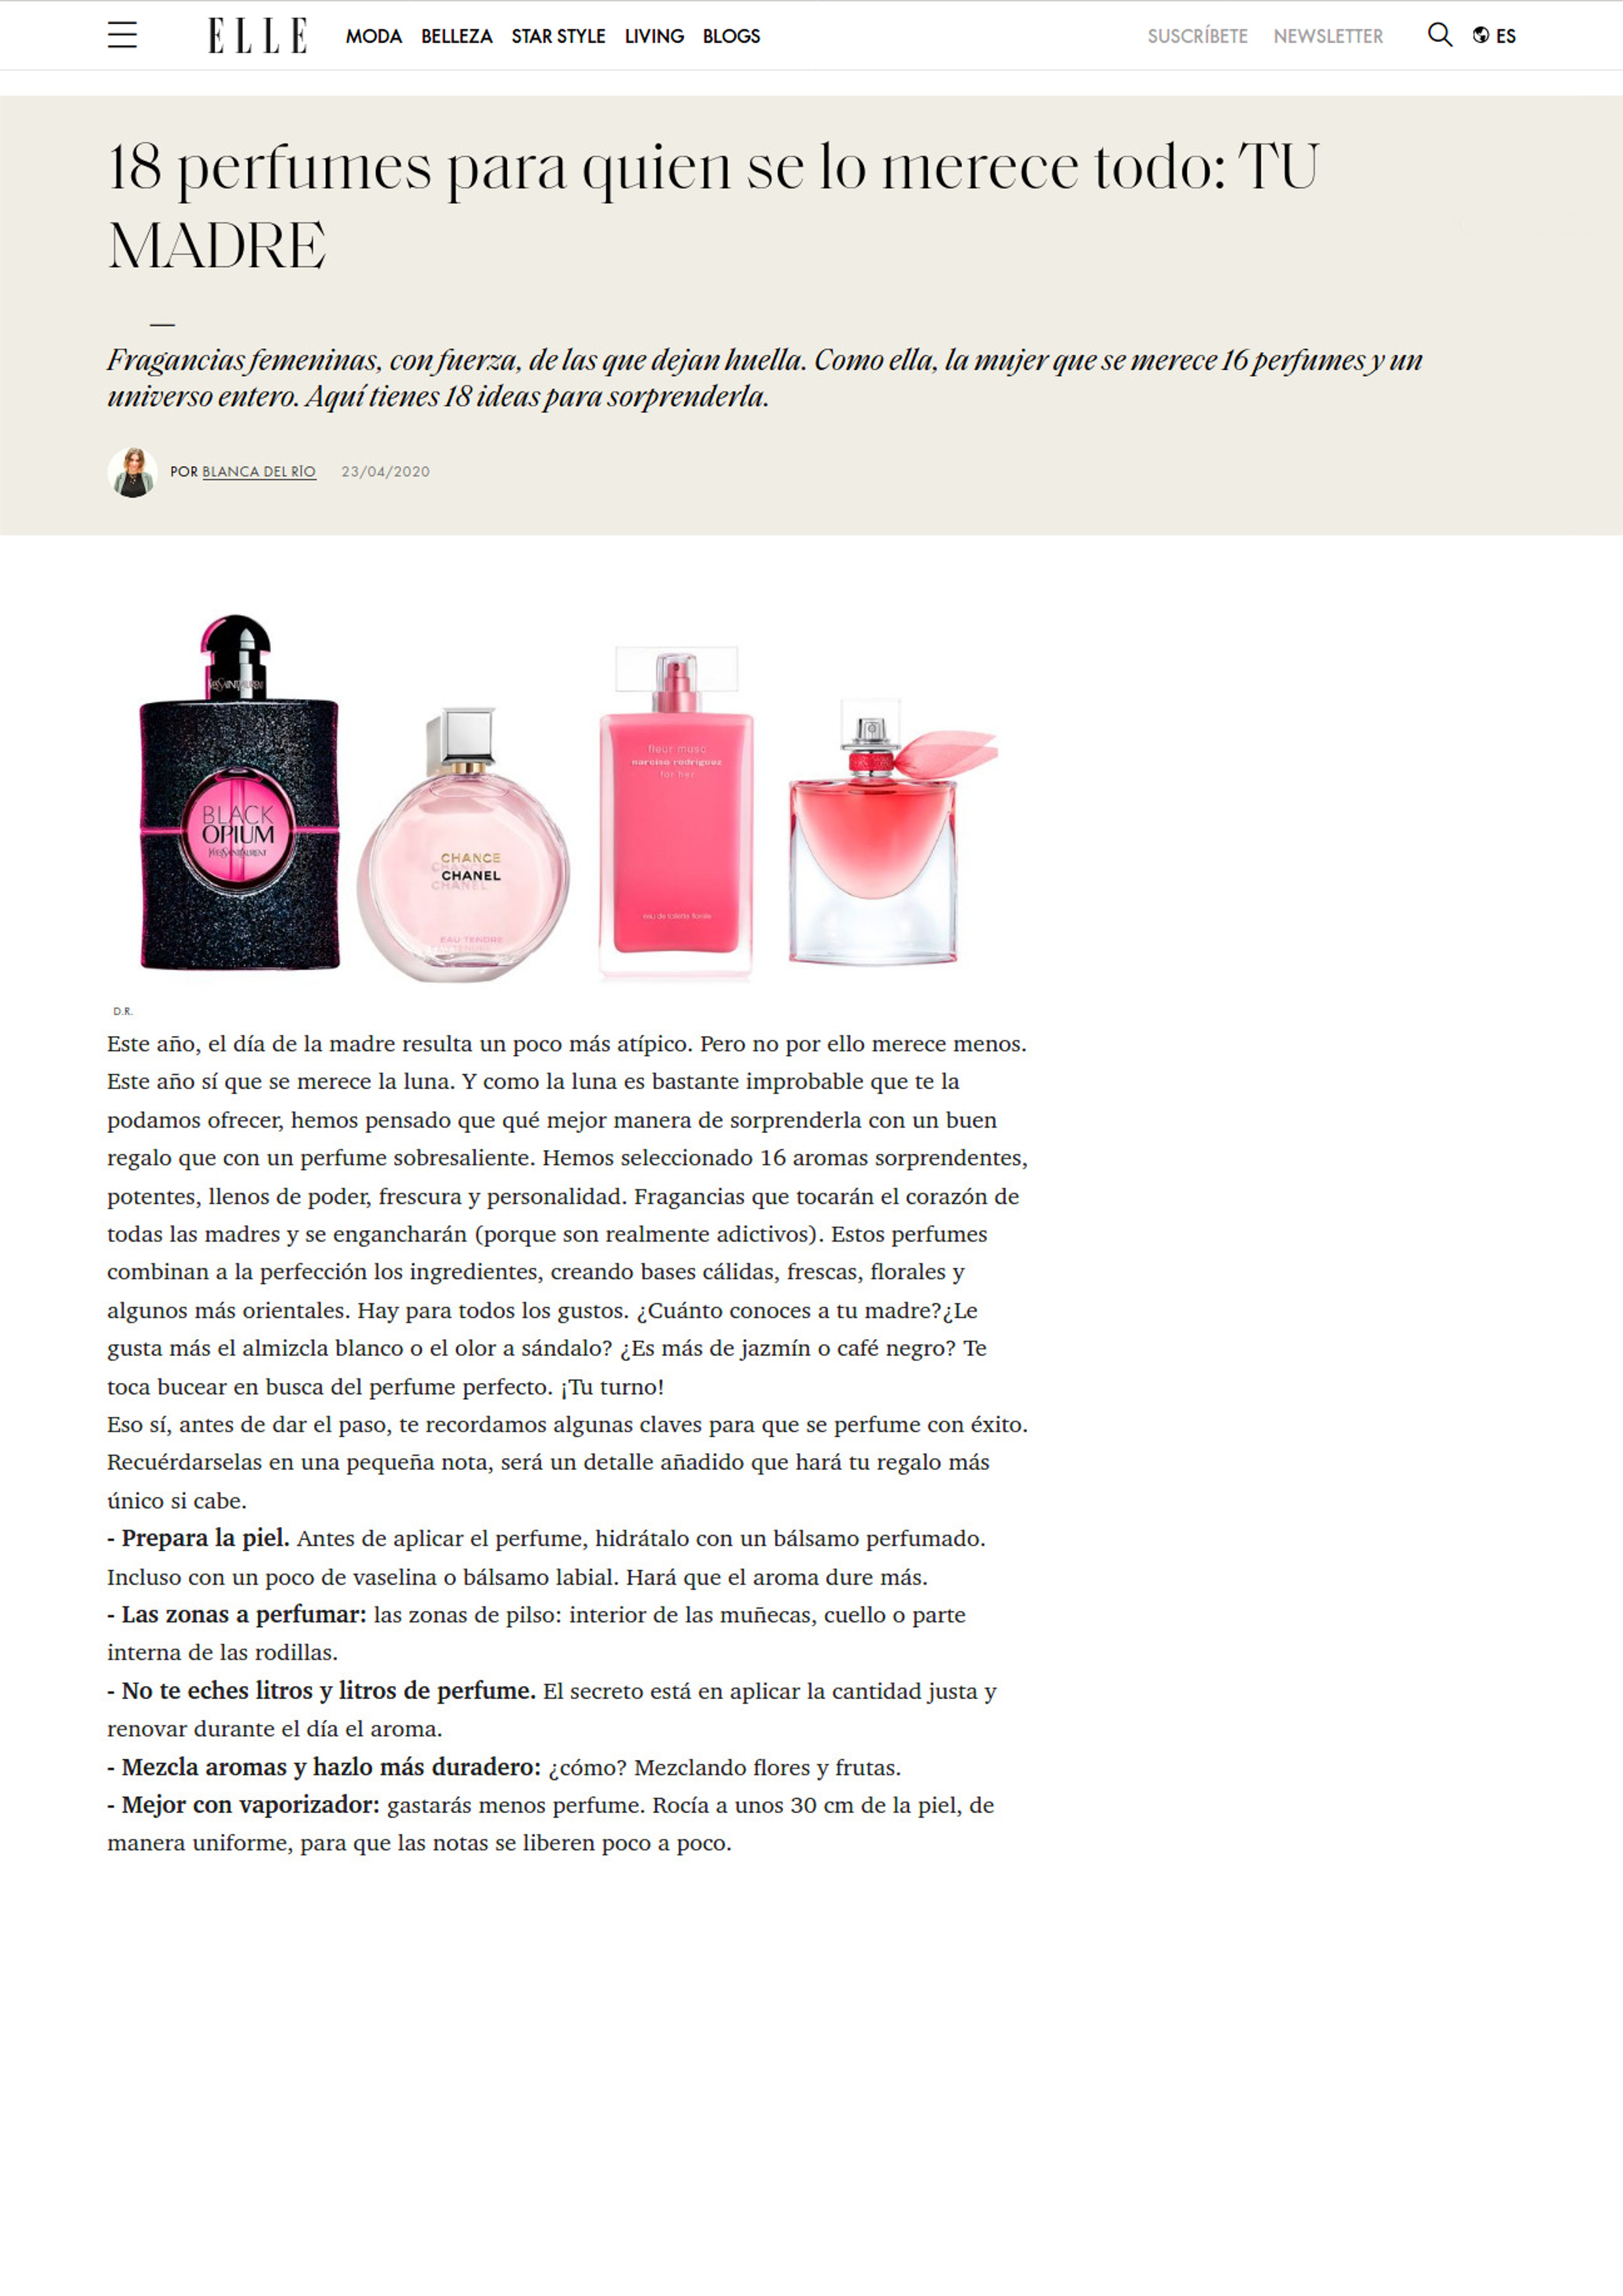 18 perfumes para quien se lo merece todo: TU MADRE - 23 Abr 2020